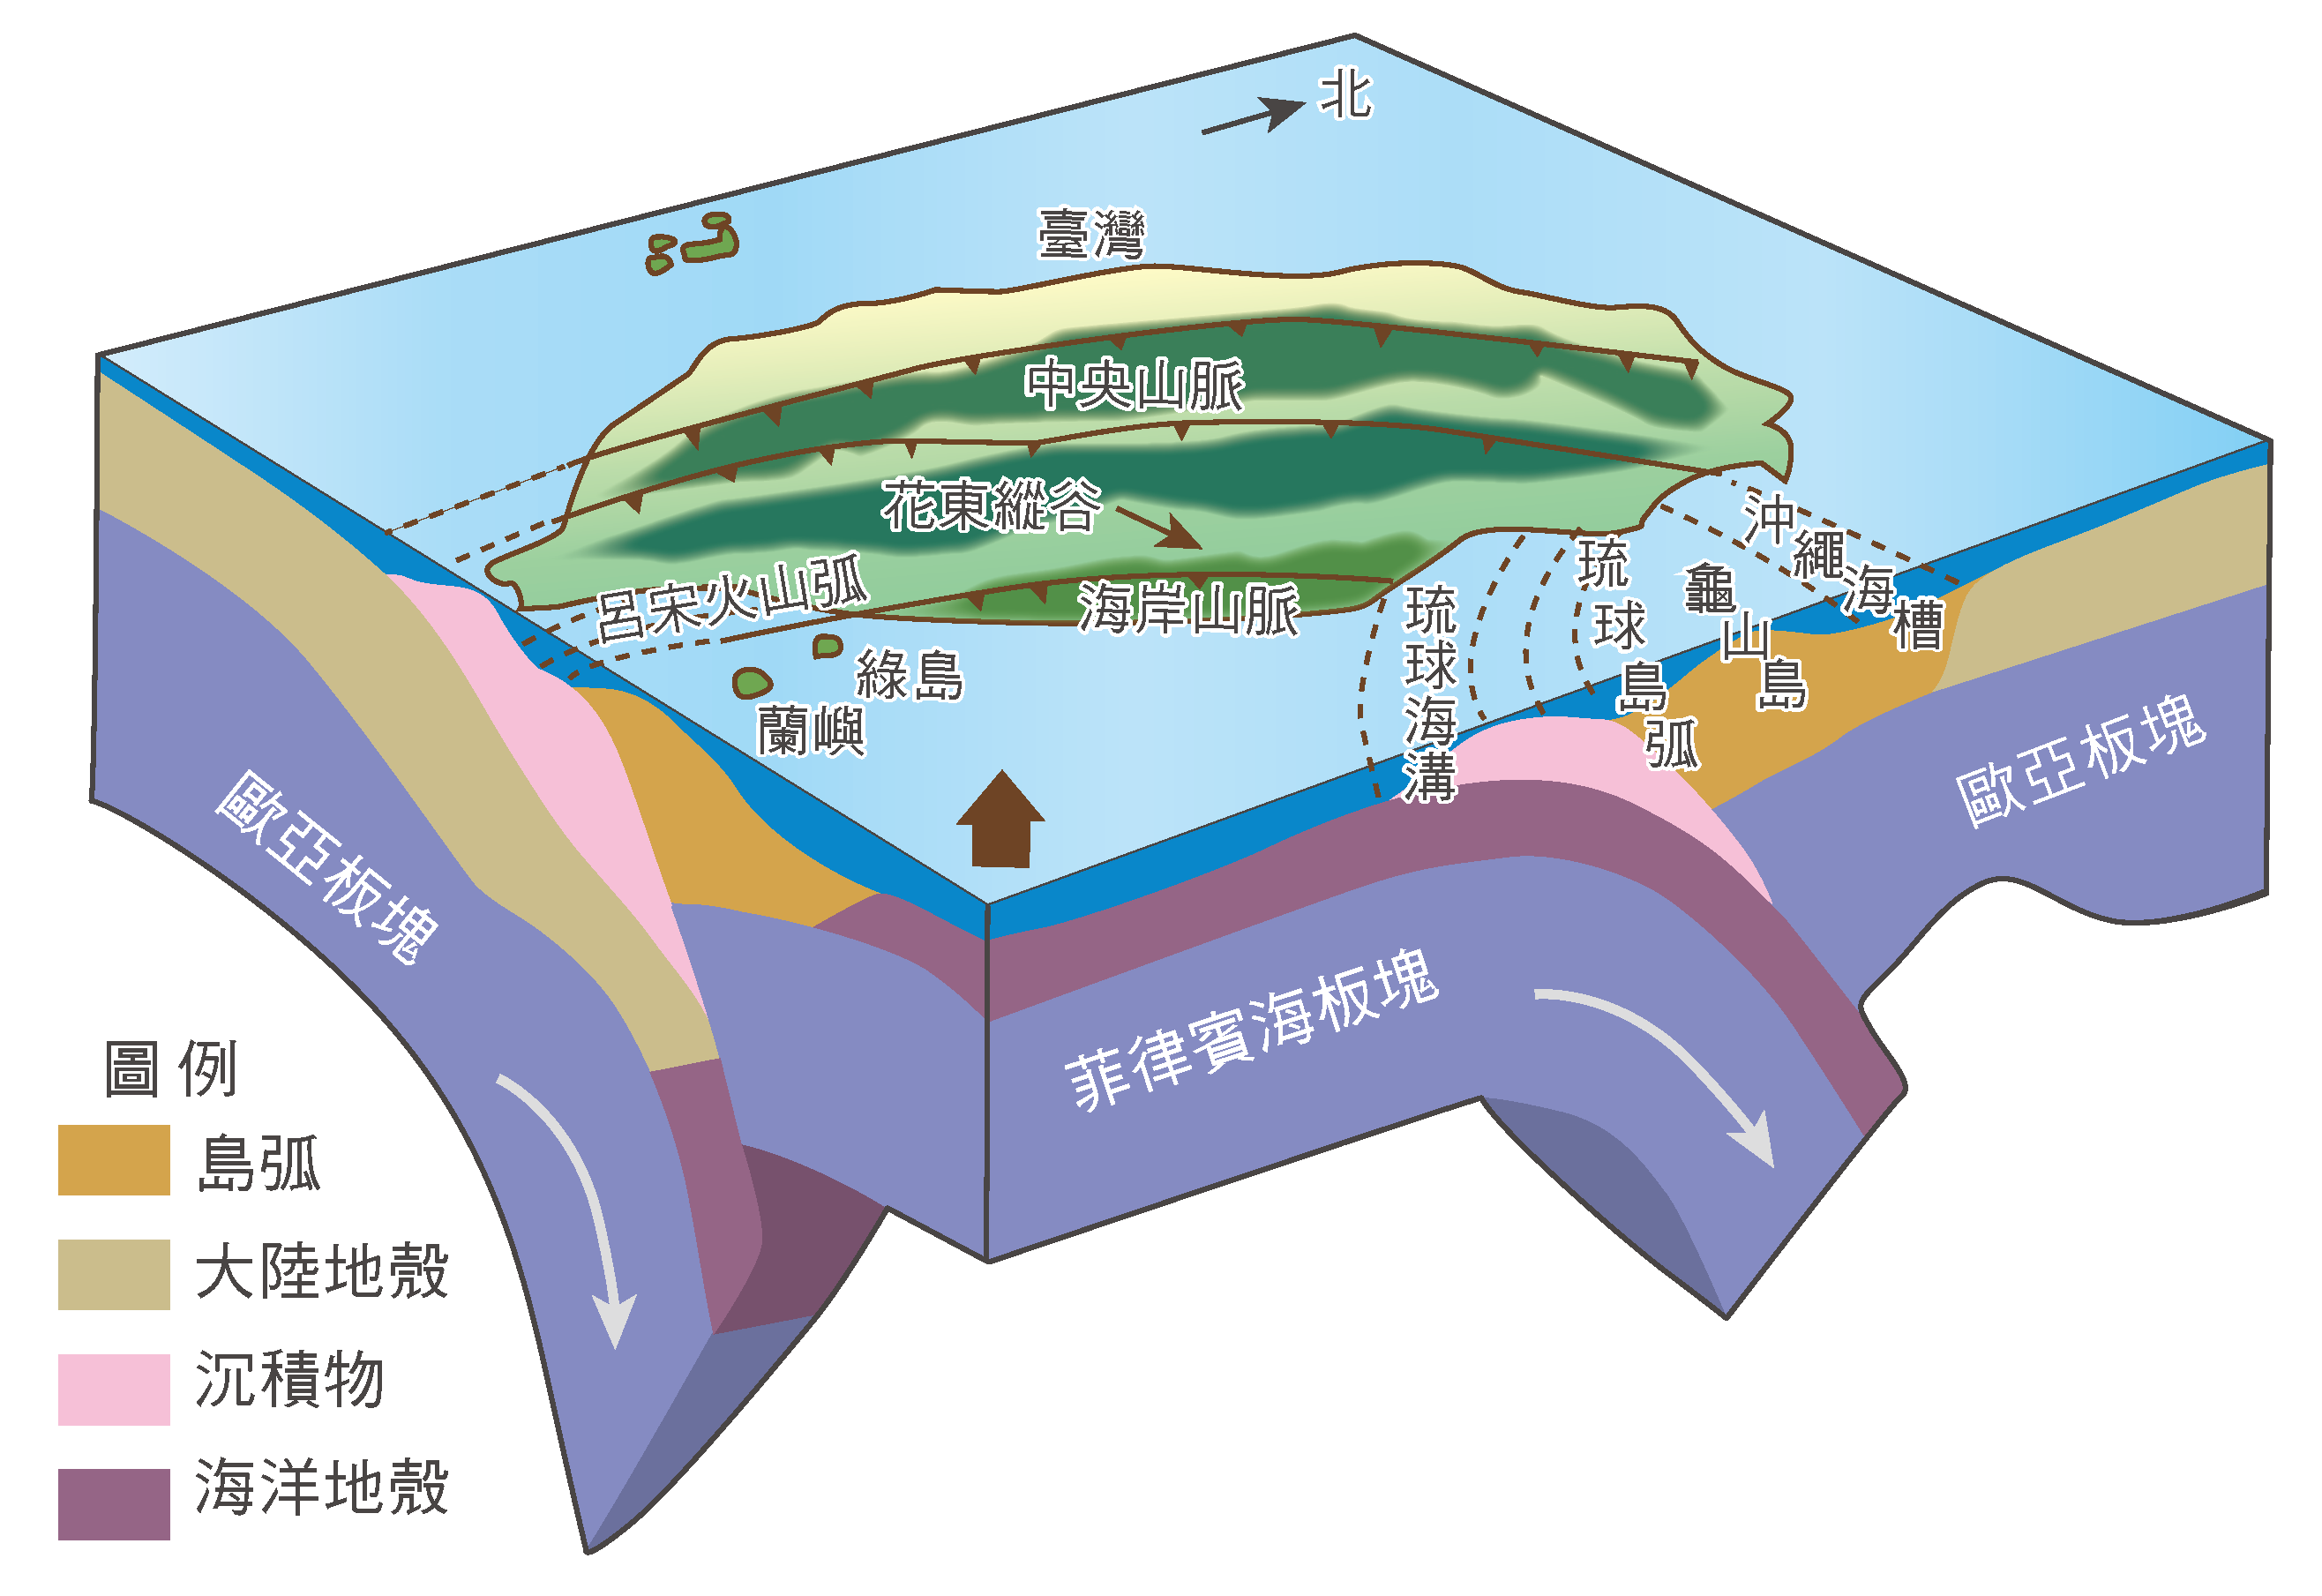 臺灣位於歐亞大陸板塊與菲律賓海板塊交會處，因此地震相當頻繁